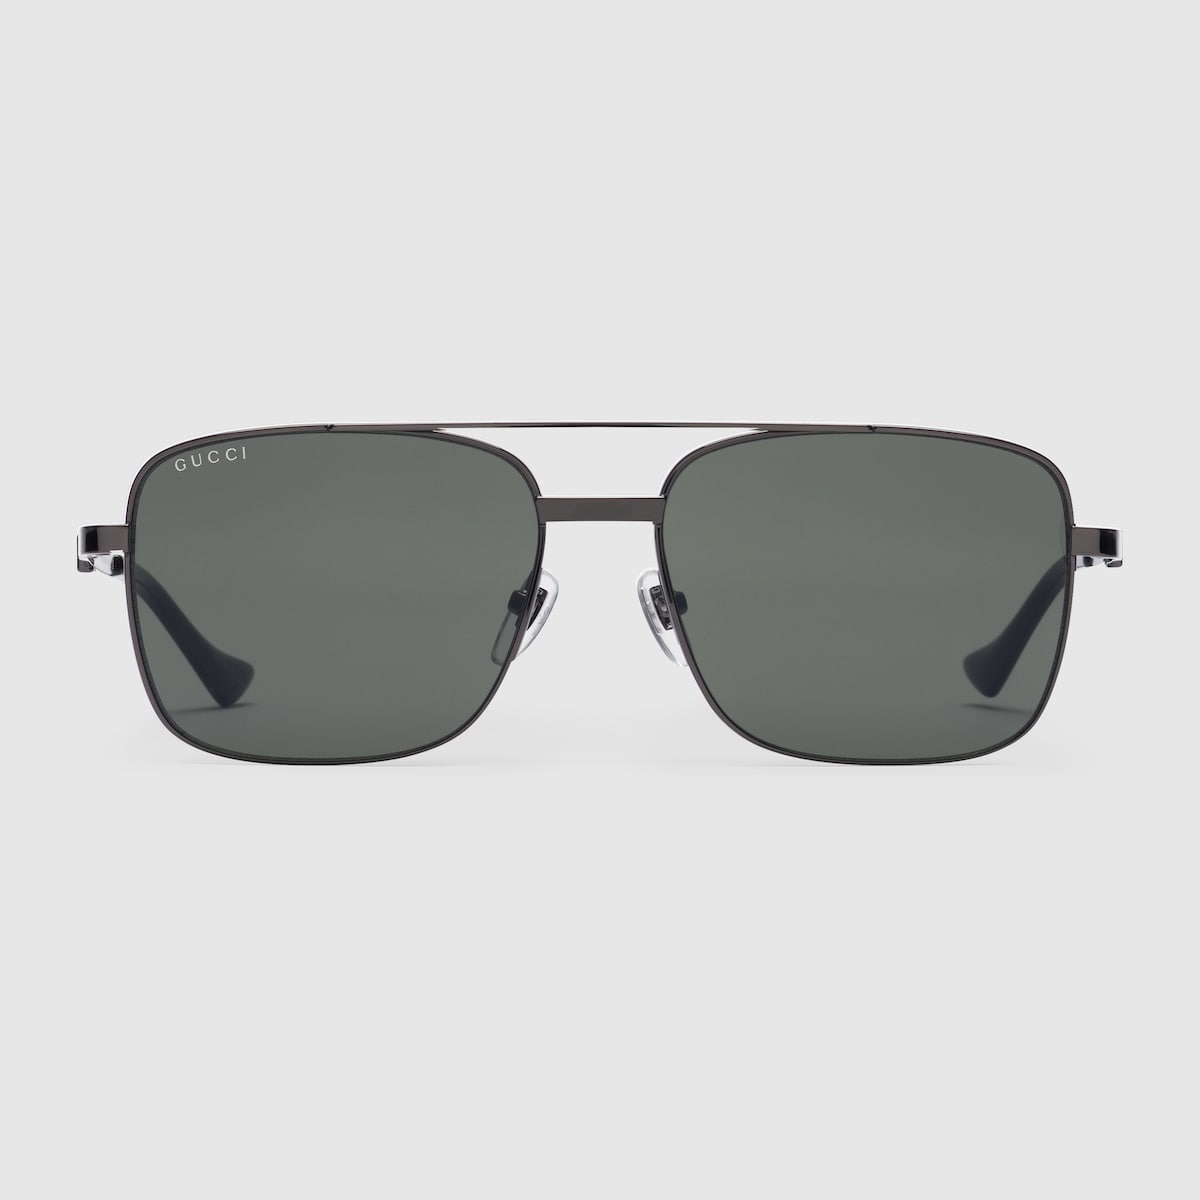 Square frame sunglasses - 1